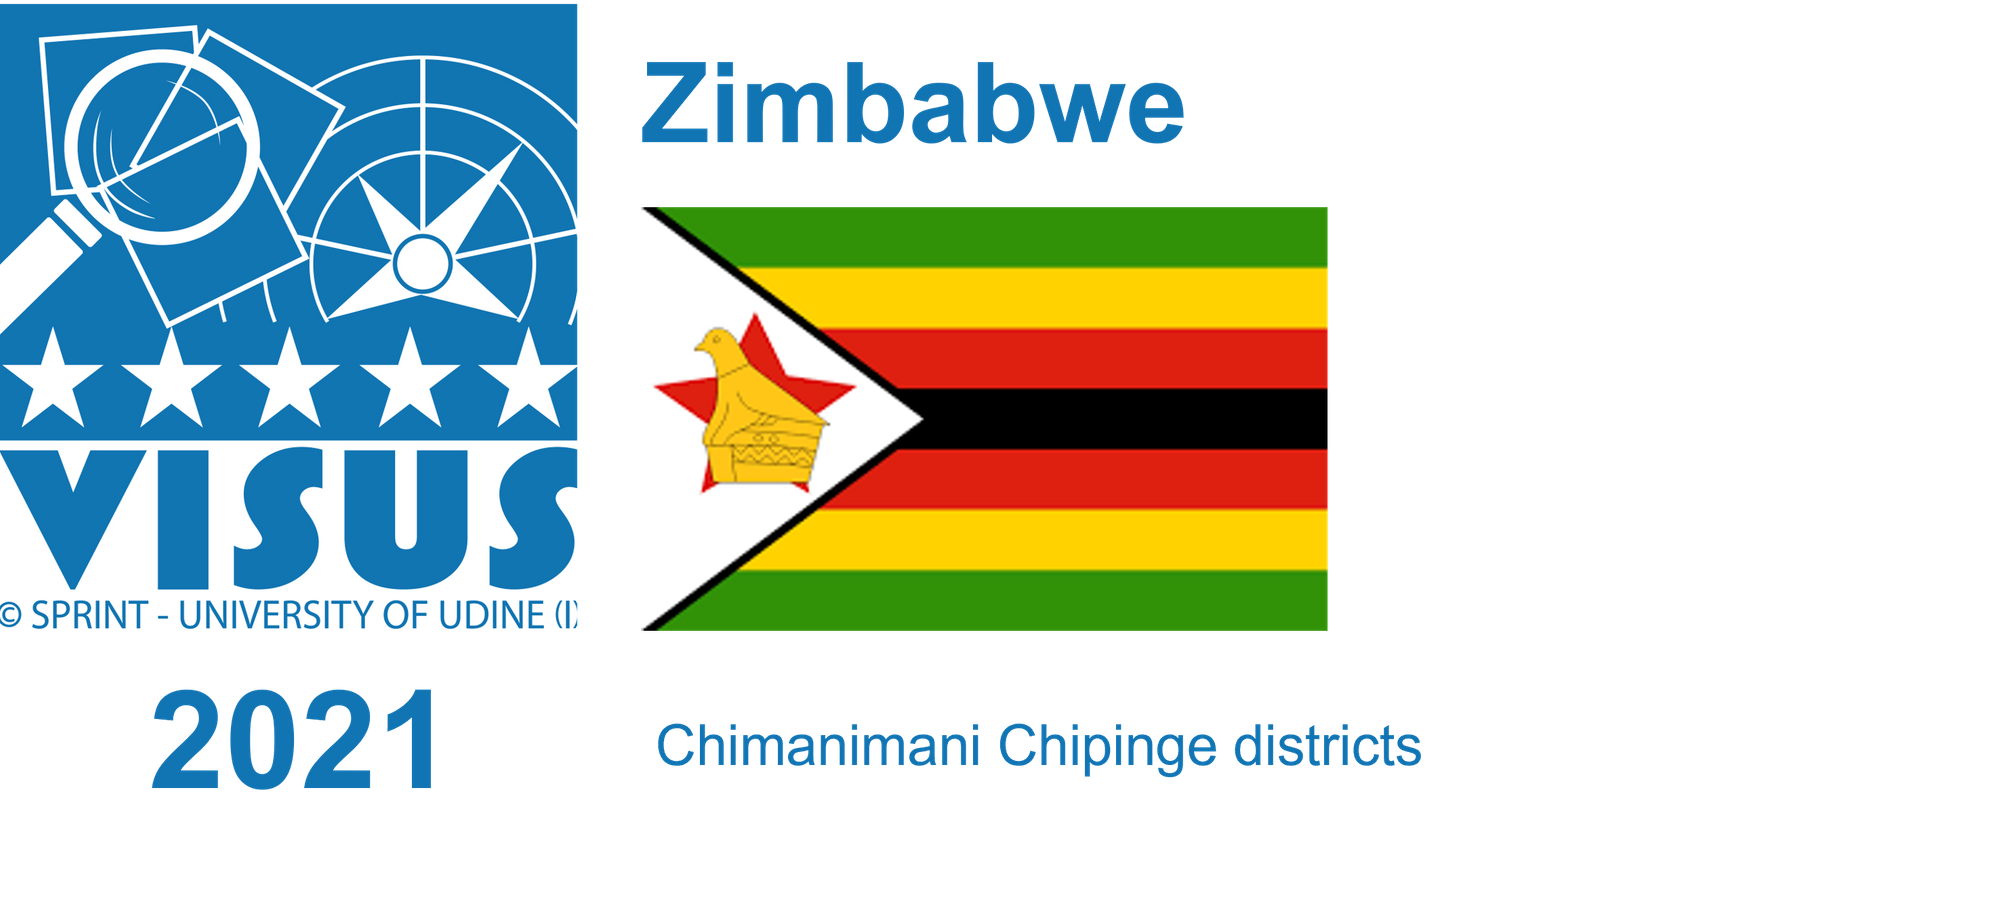 2021 Zimbabwe